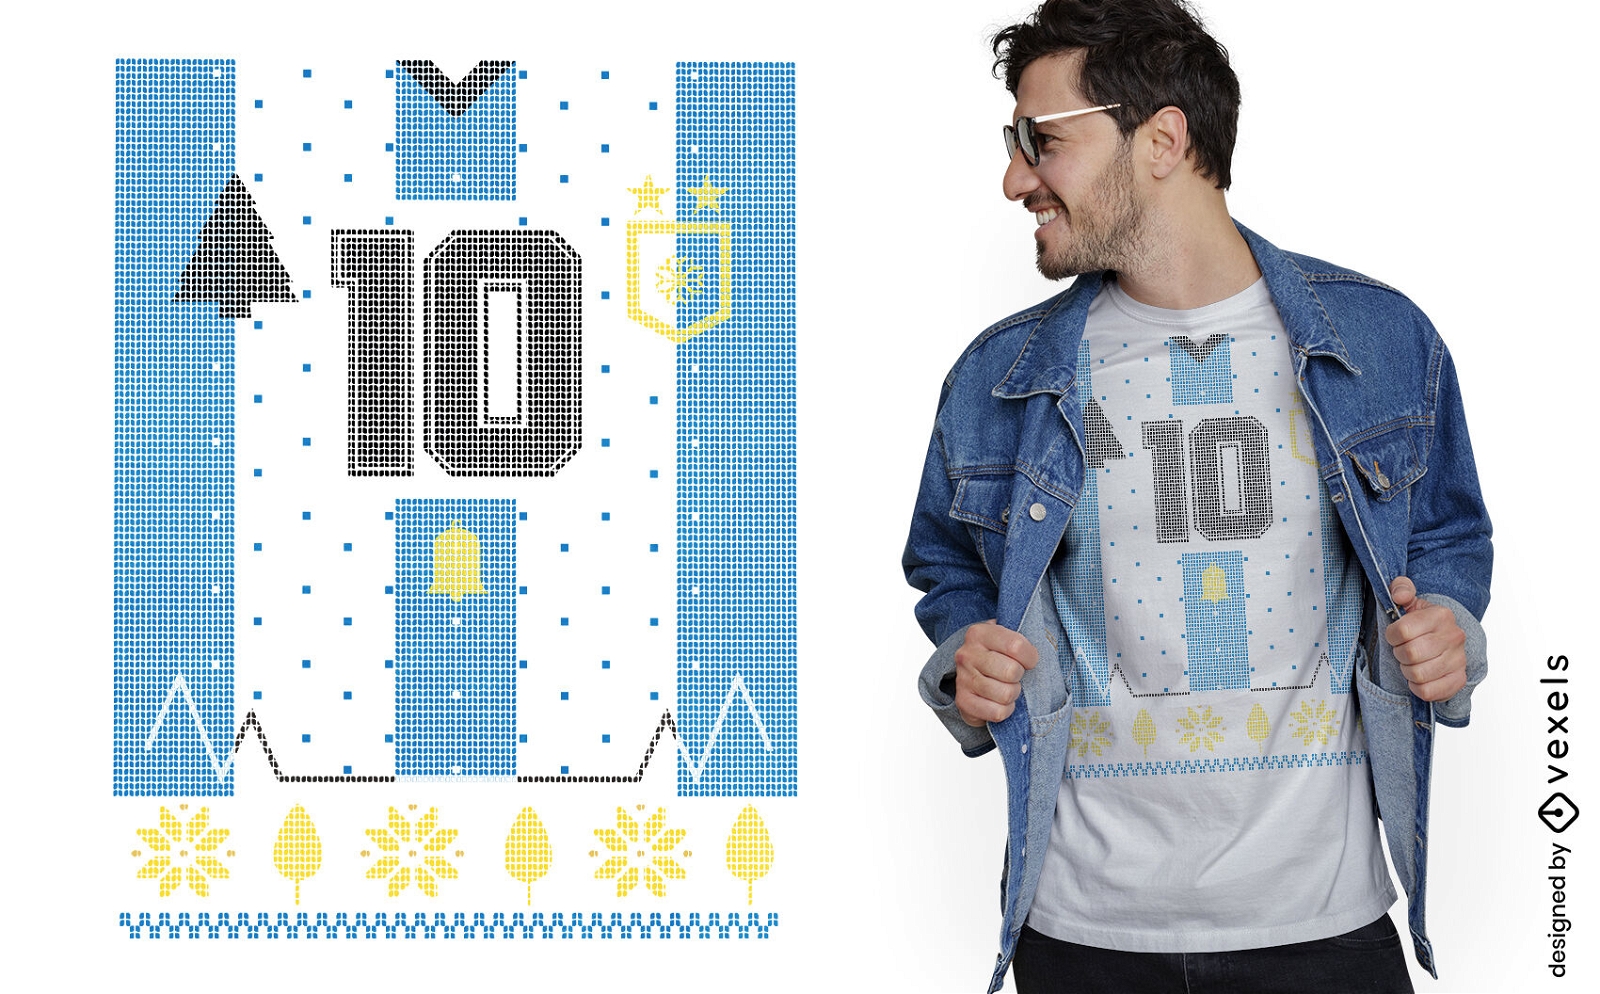 Argentinien Nummer 10 T-Shirt-Design